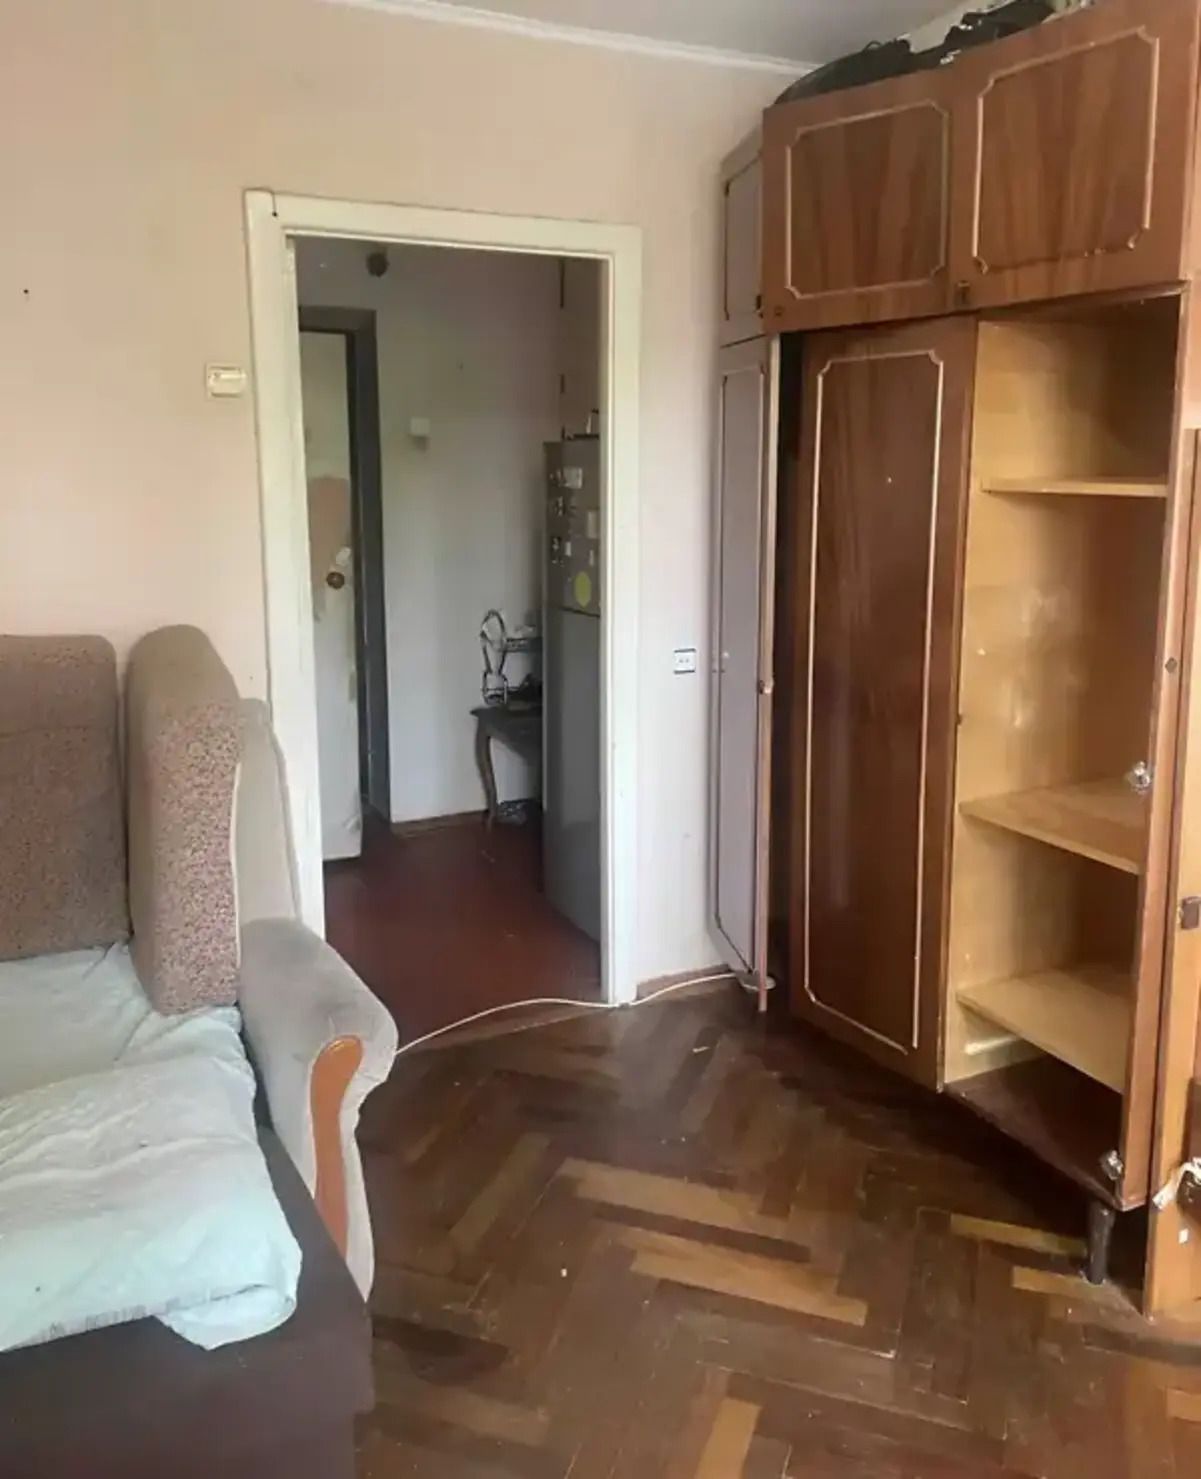 Сколько стоит самая дешевая квартира в Киеве - Недвижимость